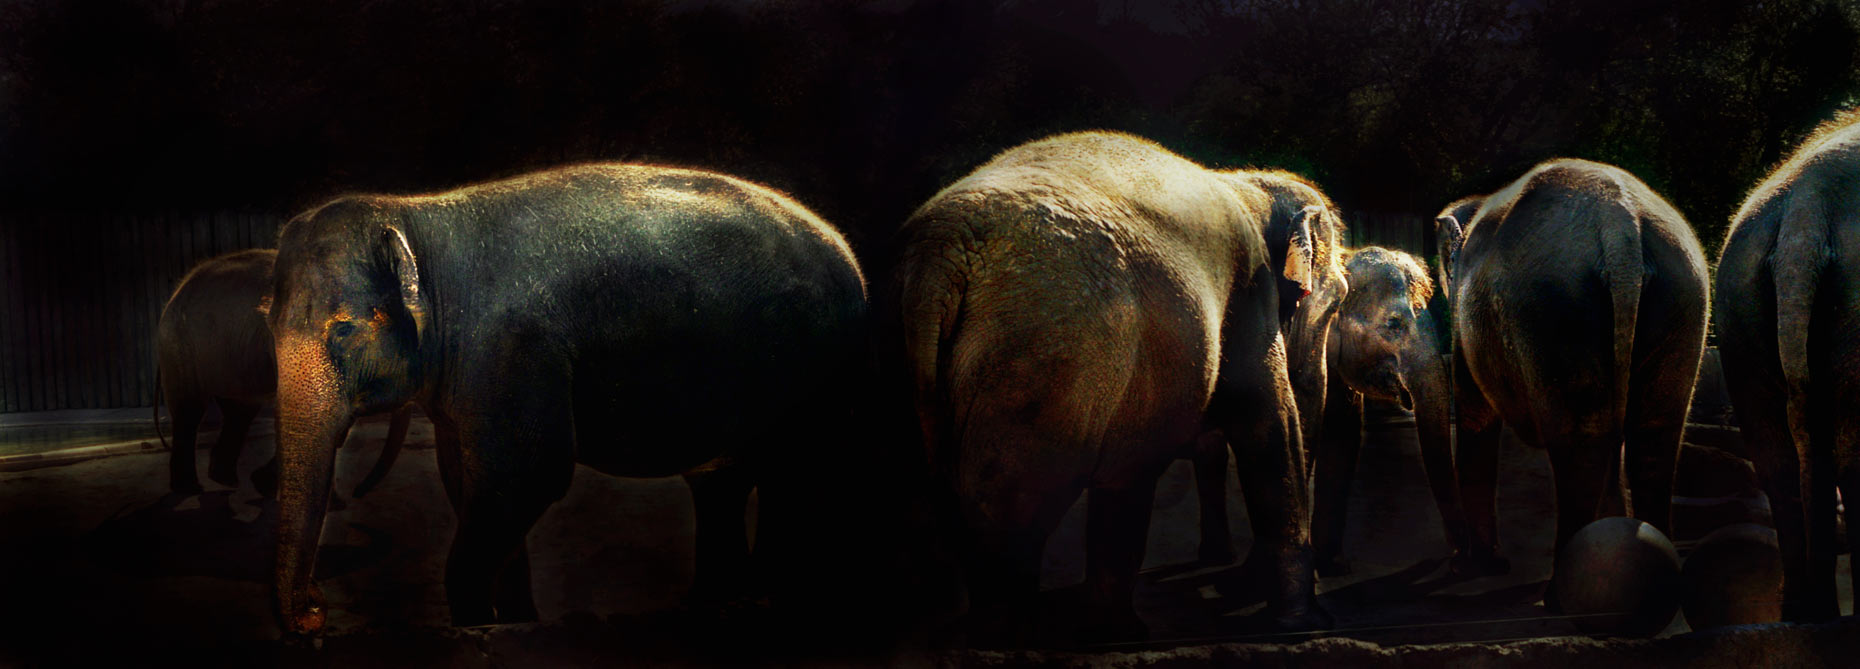 Untitled Elephants 1